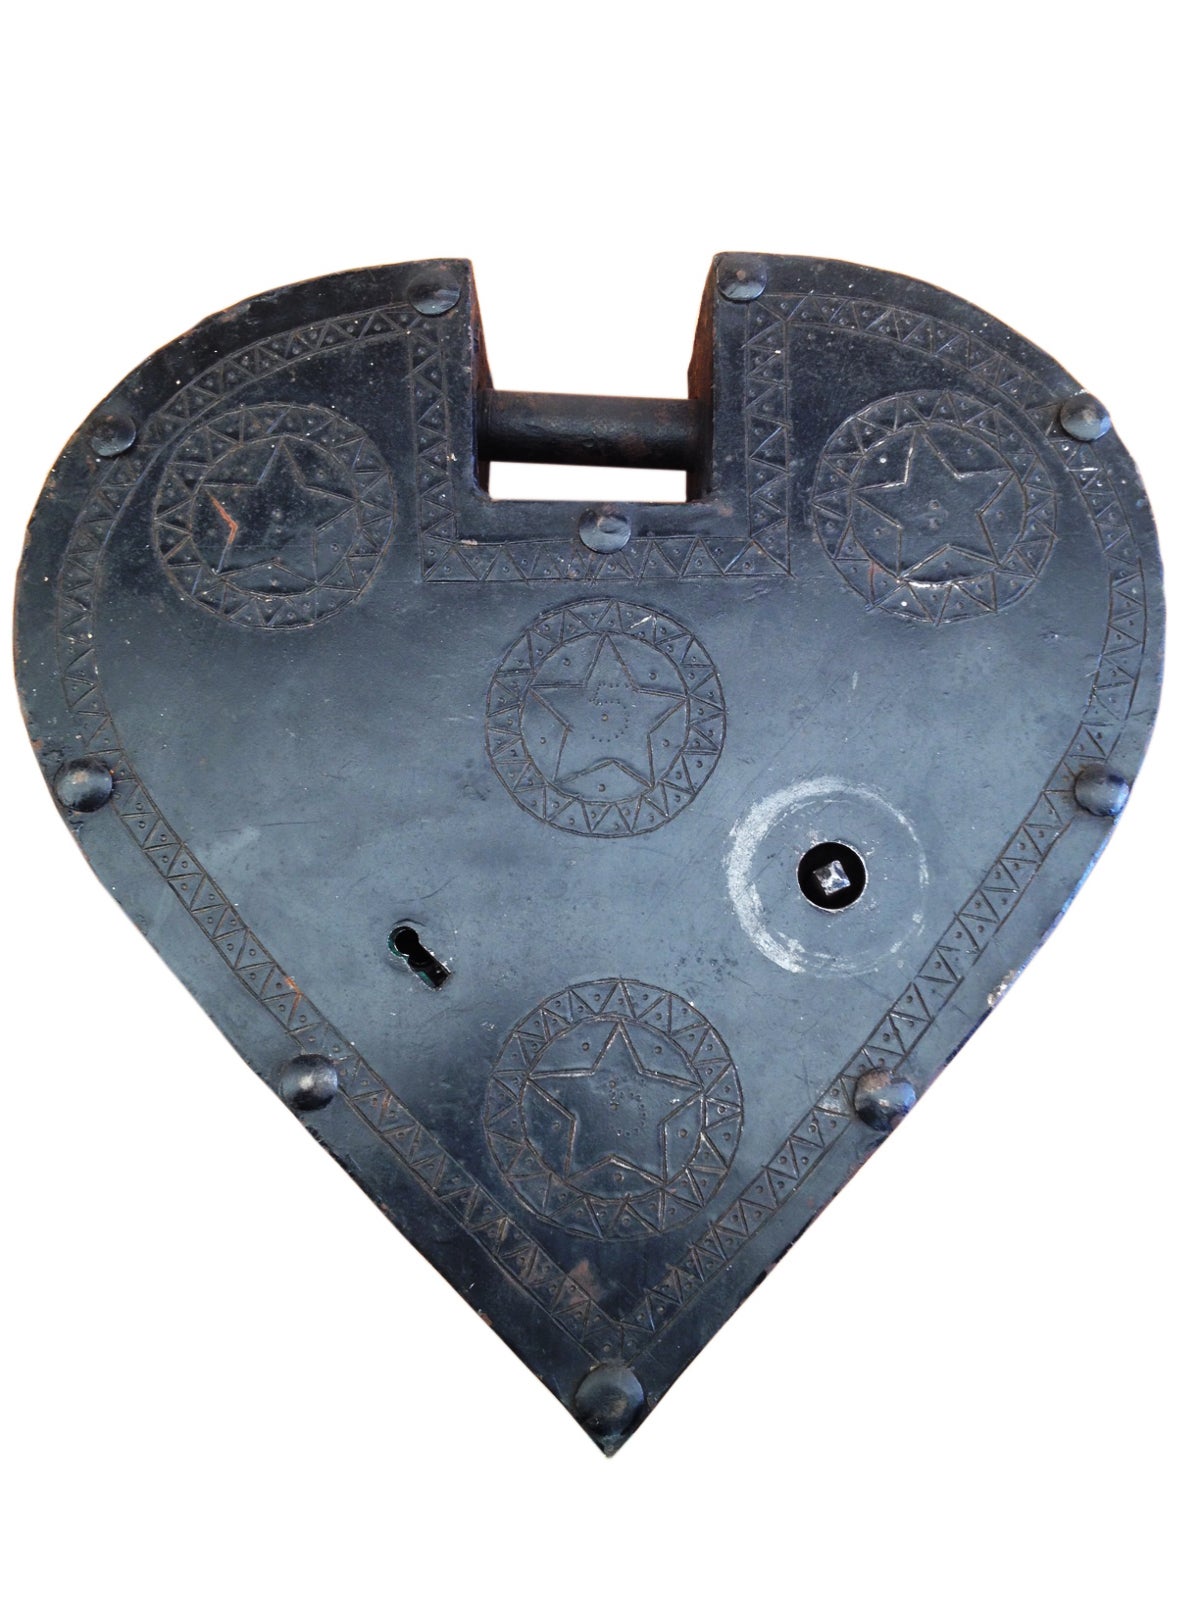 A Locksmith Trade Sign Depicting A Big Metal Padlock. 